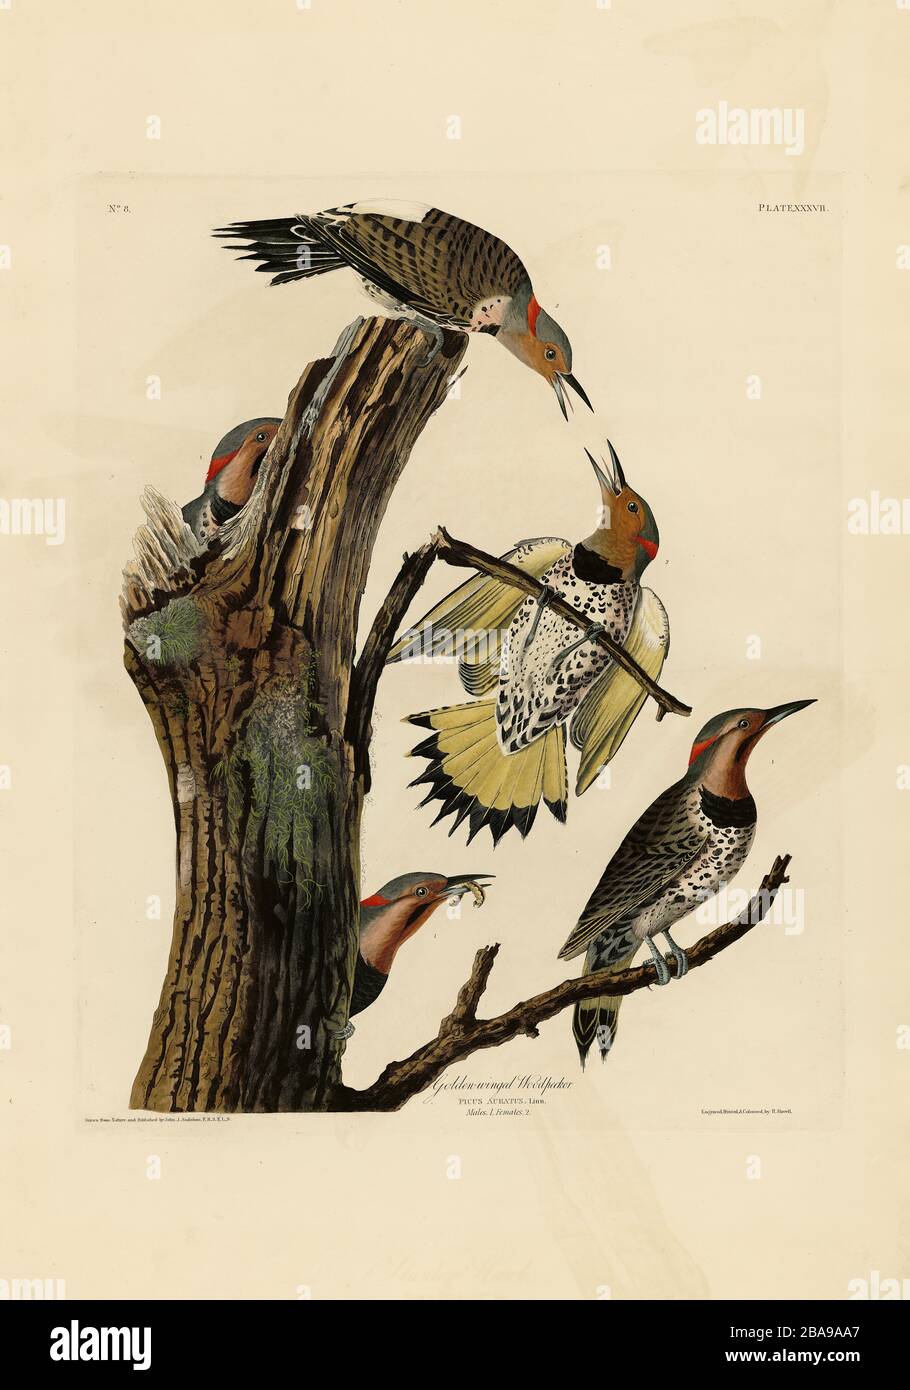 Platte 37 Goldgeflügelter Holzfäller (Northern Flicker) The Birds of America (187-184) von John James Audubon, sehr hochauflösendes, qualitativ hochwertiges Bild Stockfoto